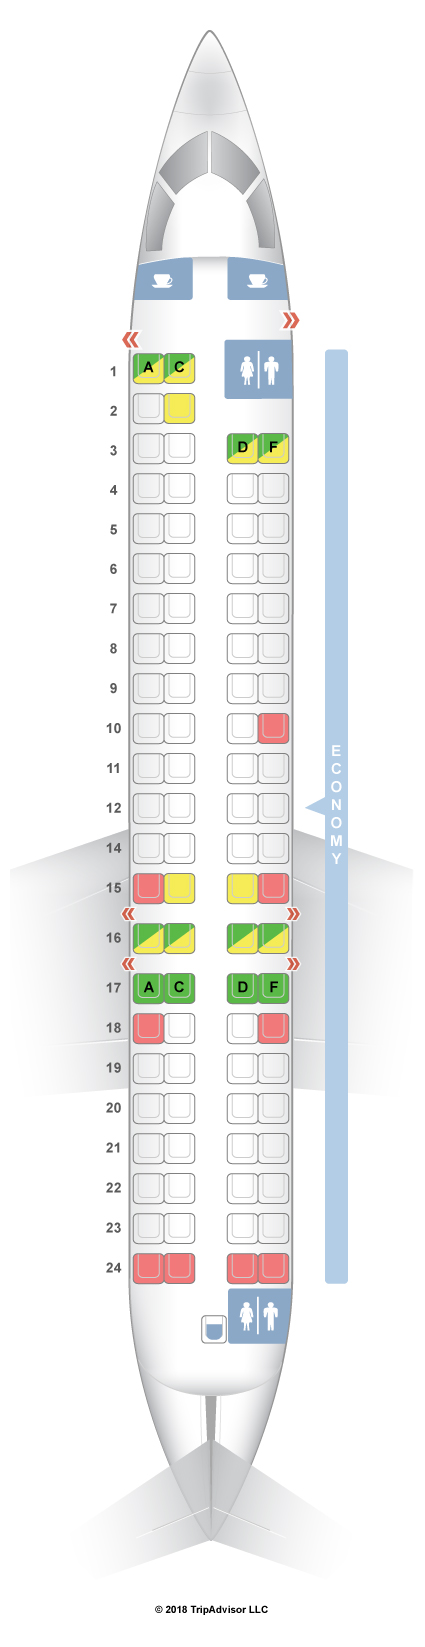 Crj900 Aircraft Seating Chart